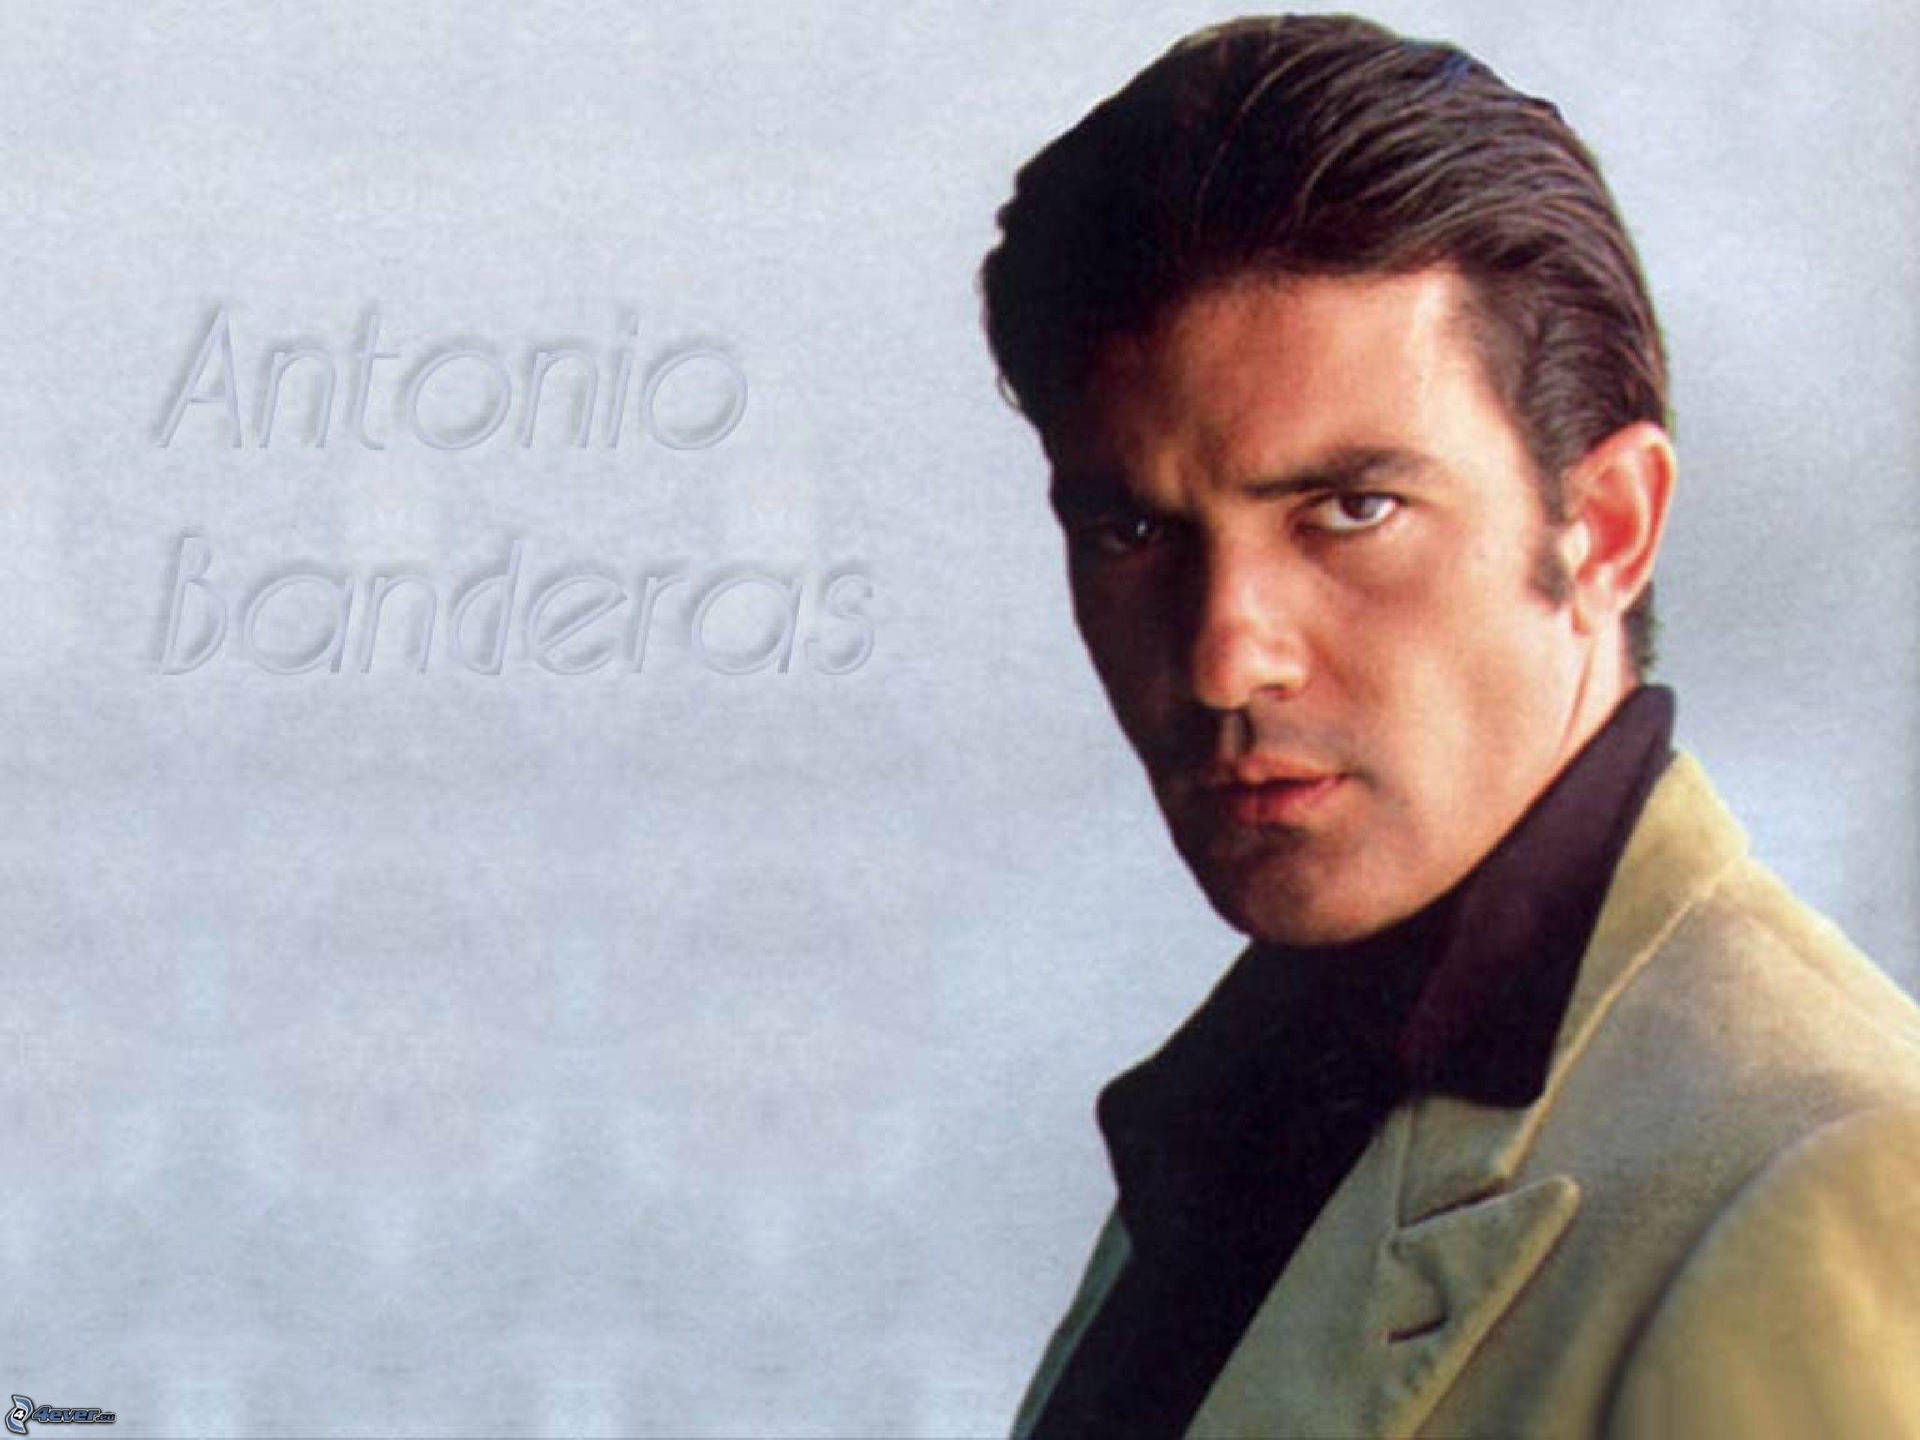 Actor Antonio Banderas Poster Wallpaper